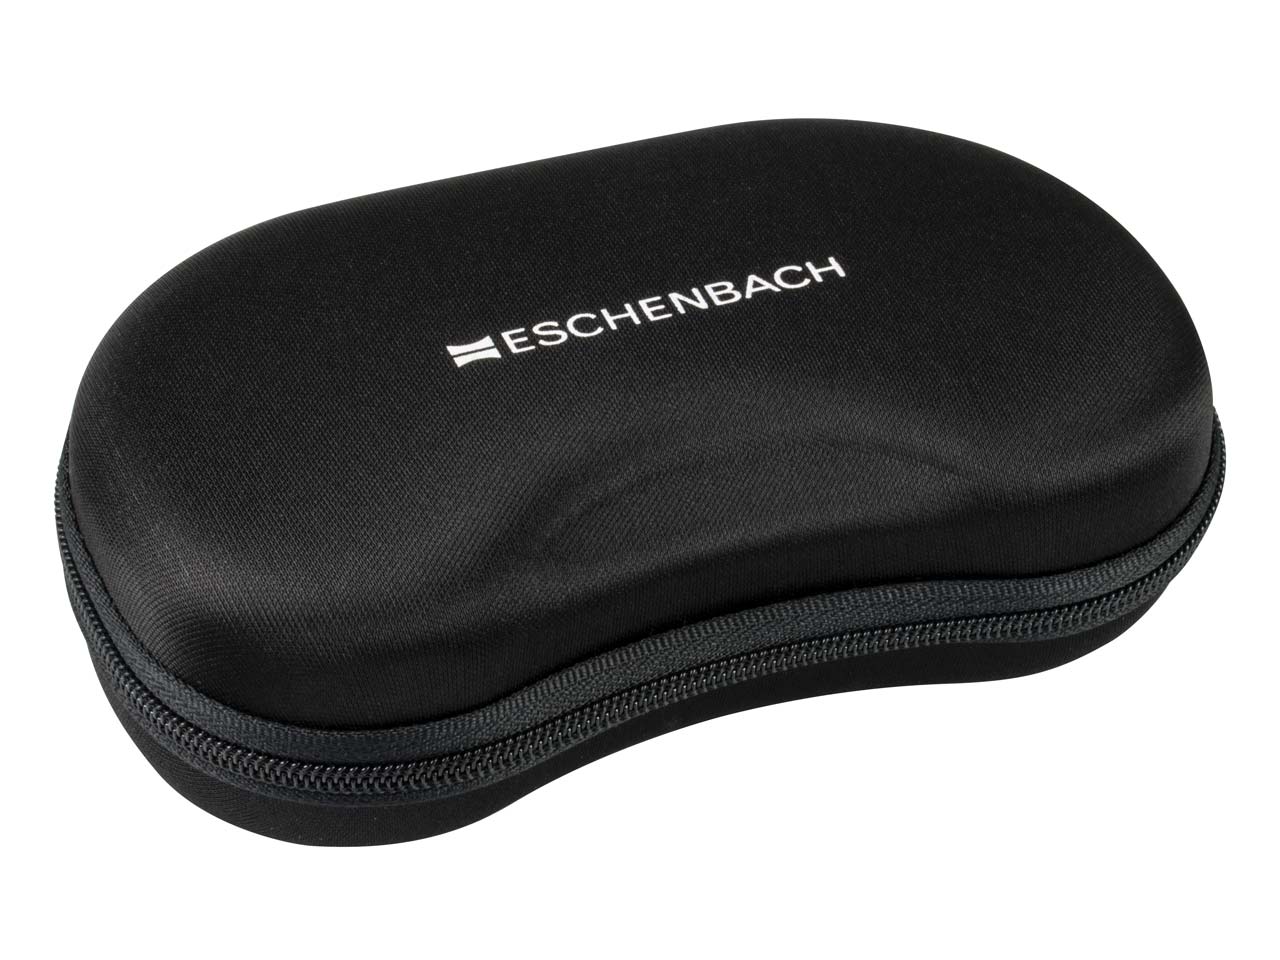 Eschenbach Maxdetail Lightweight 2.0x Magnification Inspection Glasses ...